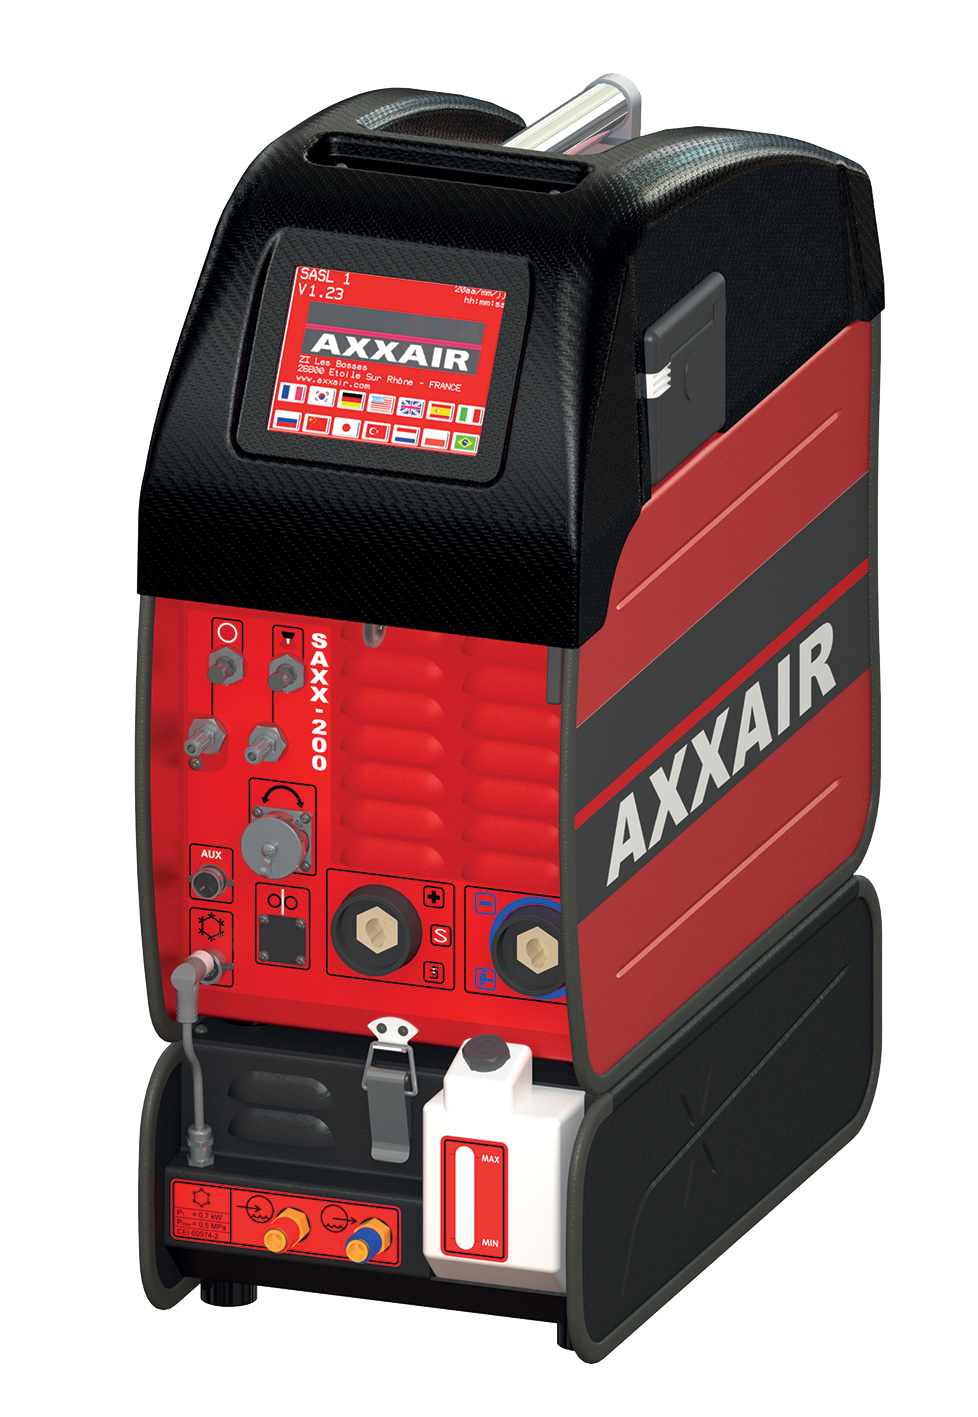 generatore-axxair-saxx-200-con-raffreddamento-scool-700